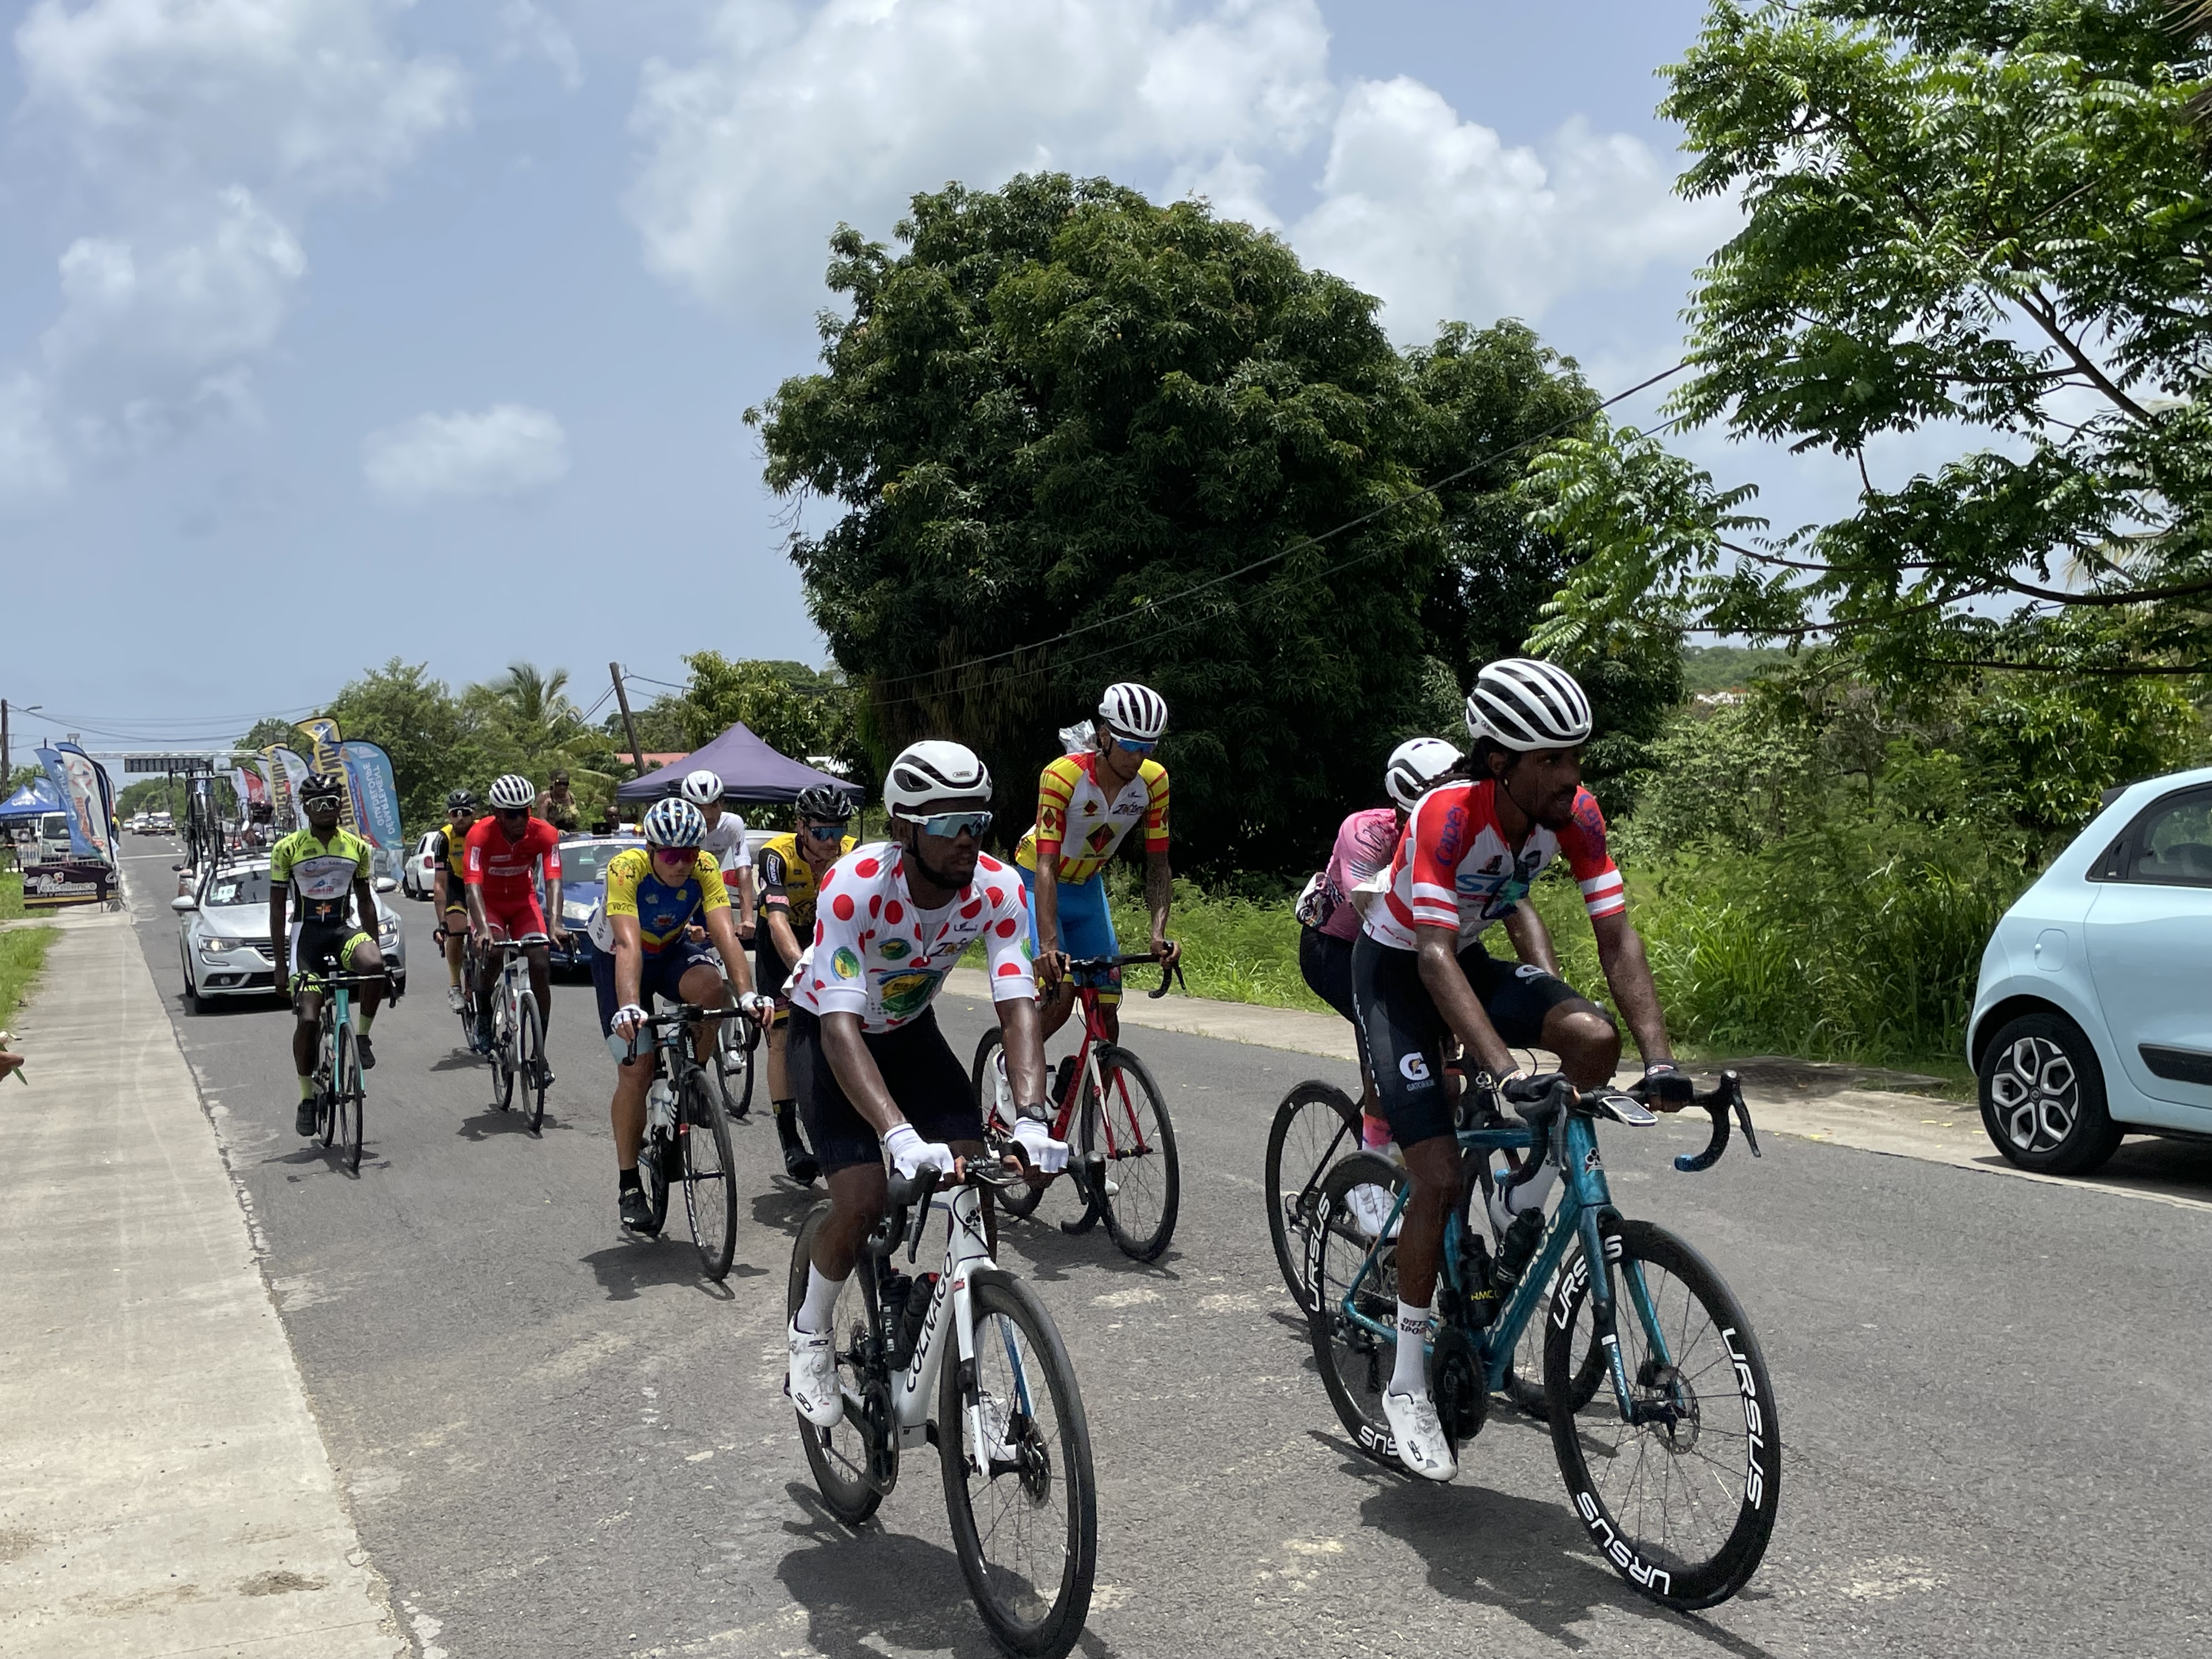     Le Tour cycliste de Guadeloupe se met en place

